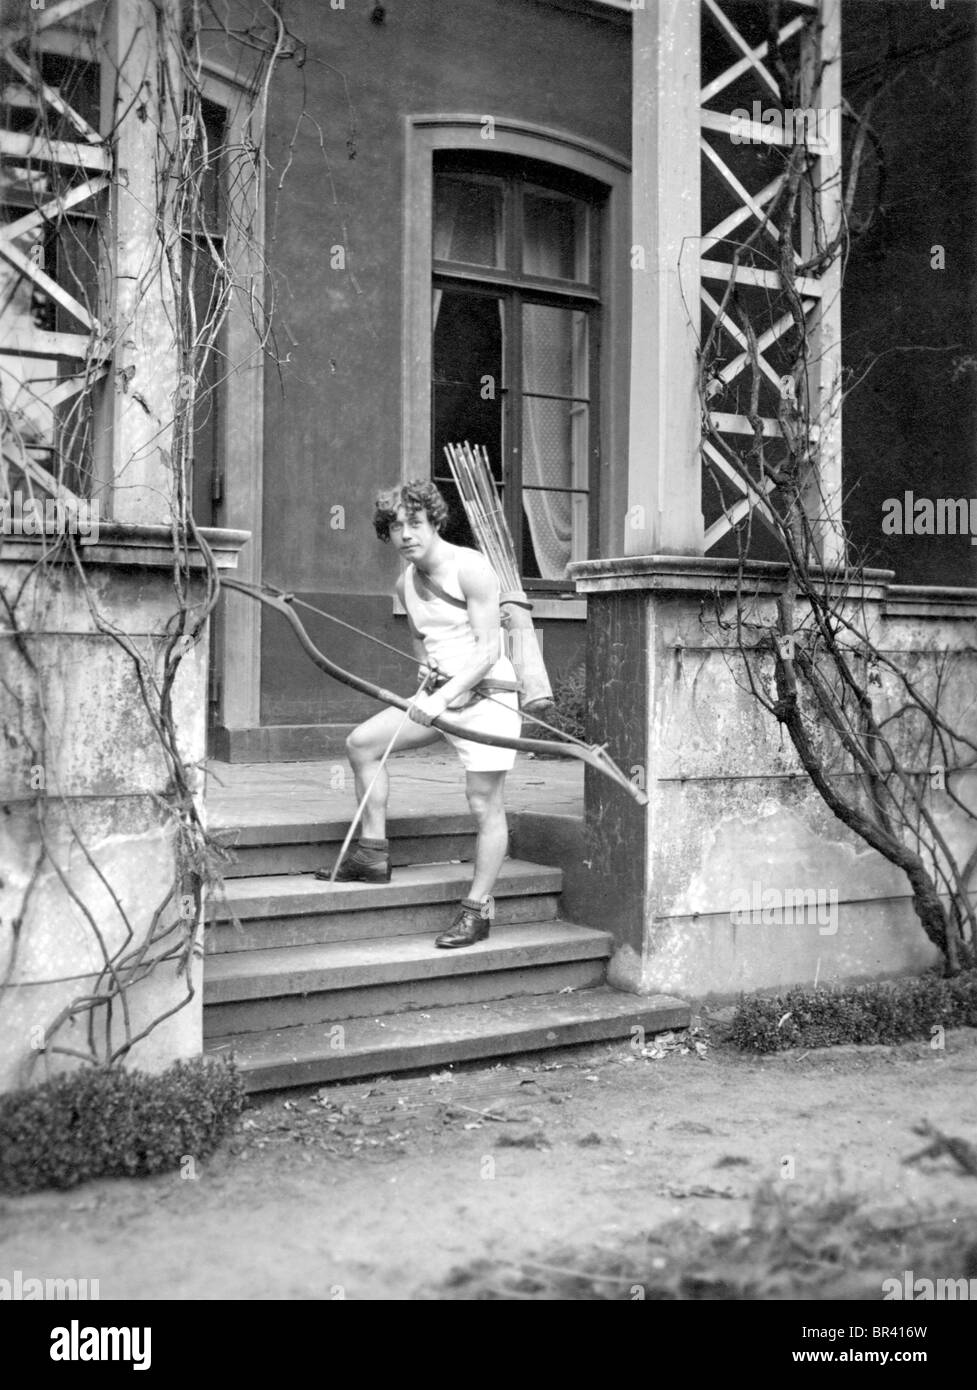 Imagen histórica, el niño con un arco y una flecha, ca. 1920 Foto de stock